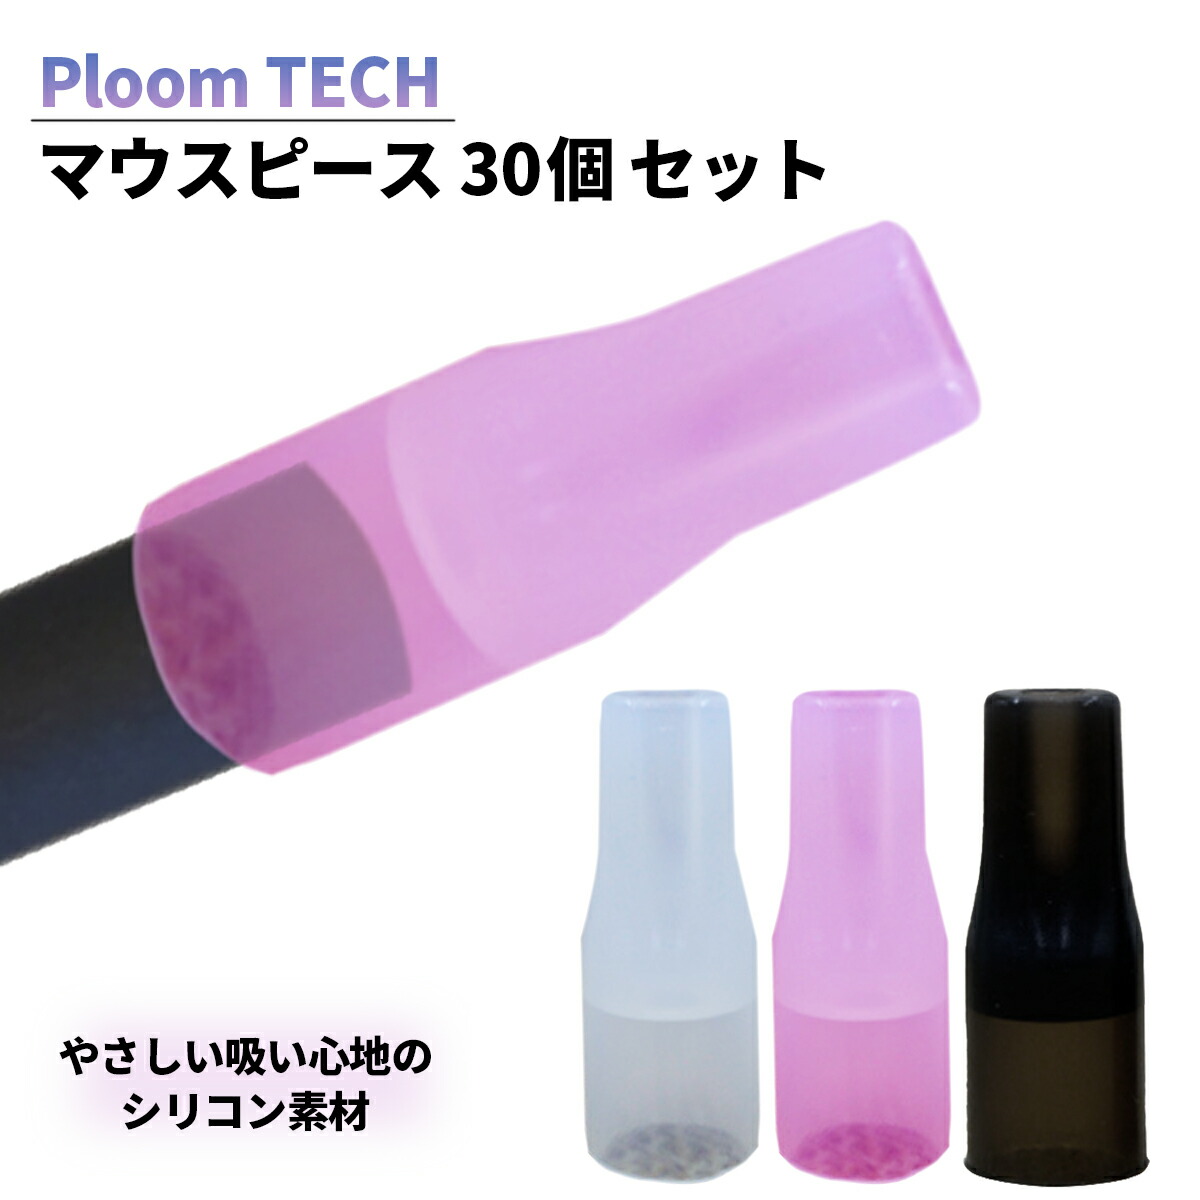 市場 マウスピース Ploom 一ヶ月分 プルームテックプラス 吸い口 30個入り Ploomtech プルームテック キャップ 30mm Tech シリコン素材